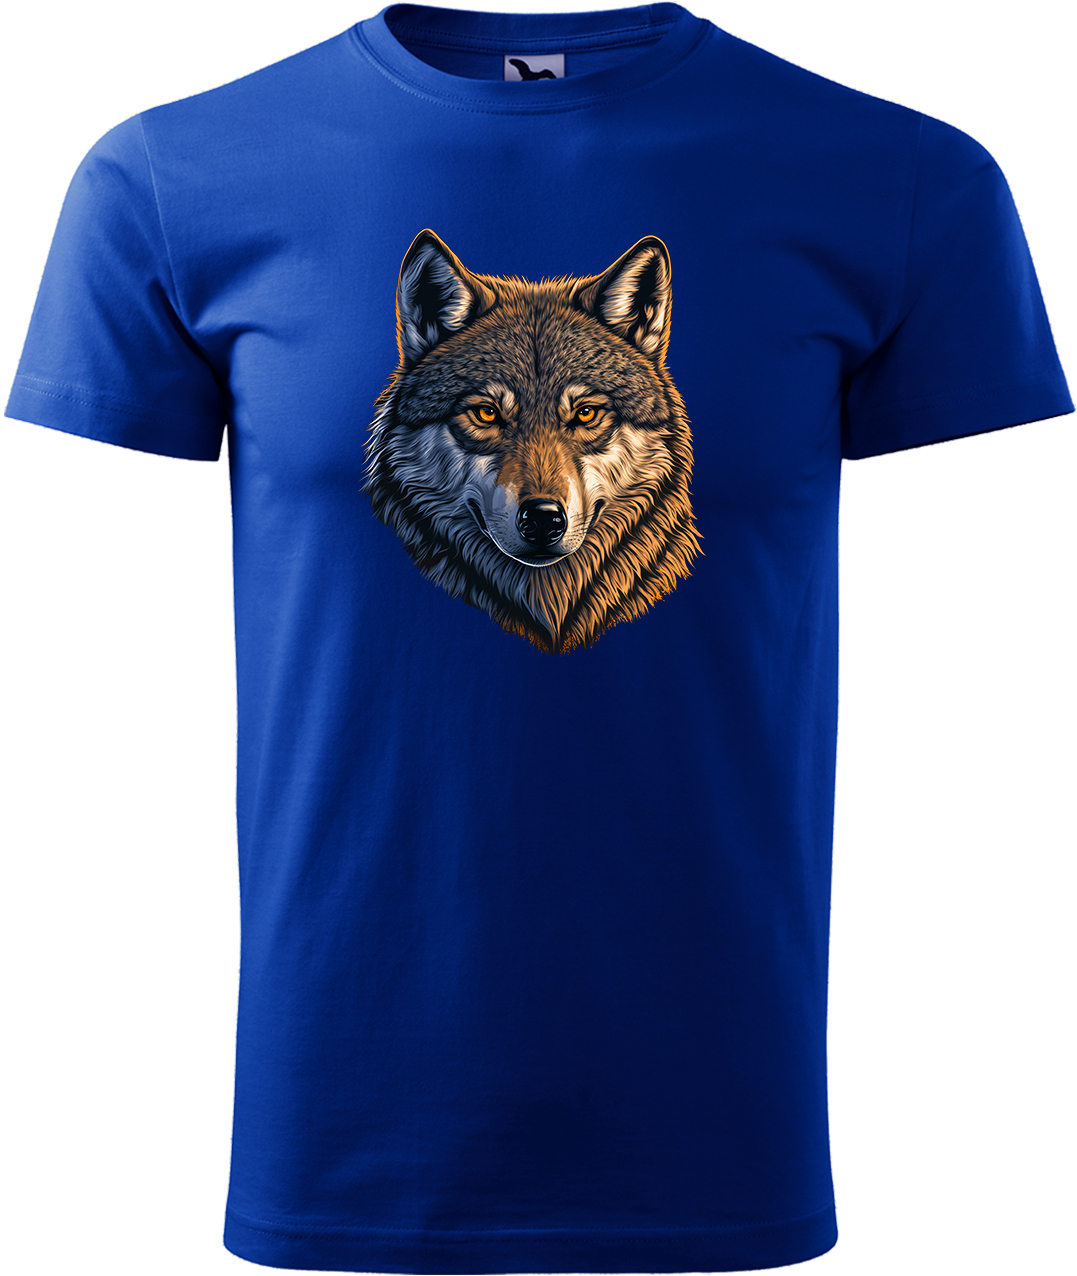 Pánské tričko s vlkem - Hlava vlka Velikost: XL, Barva: Královská modrá (05), Střih: pánský